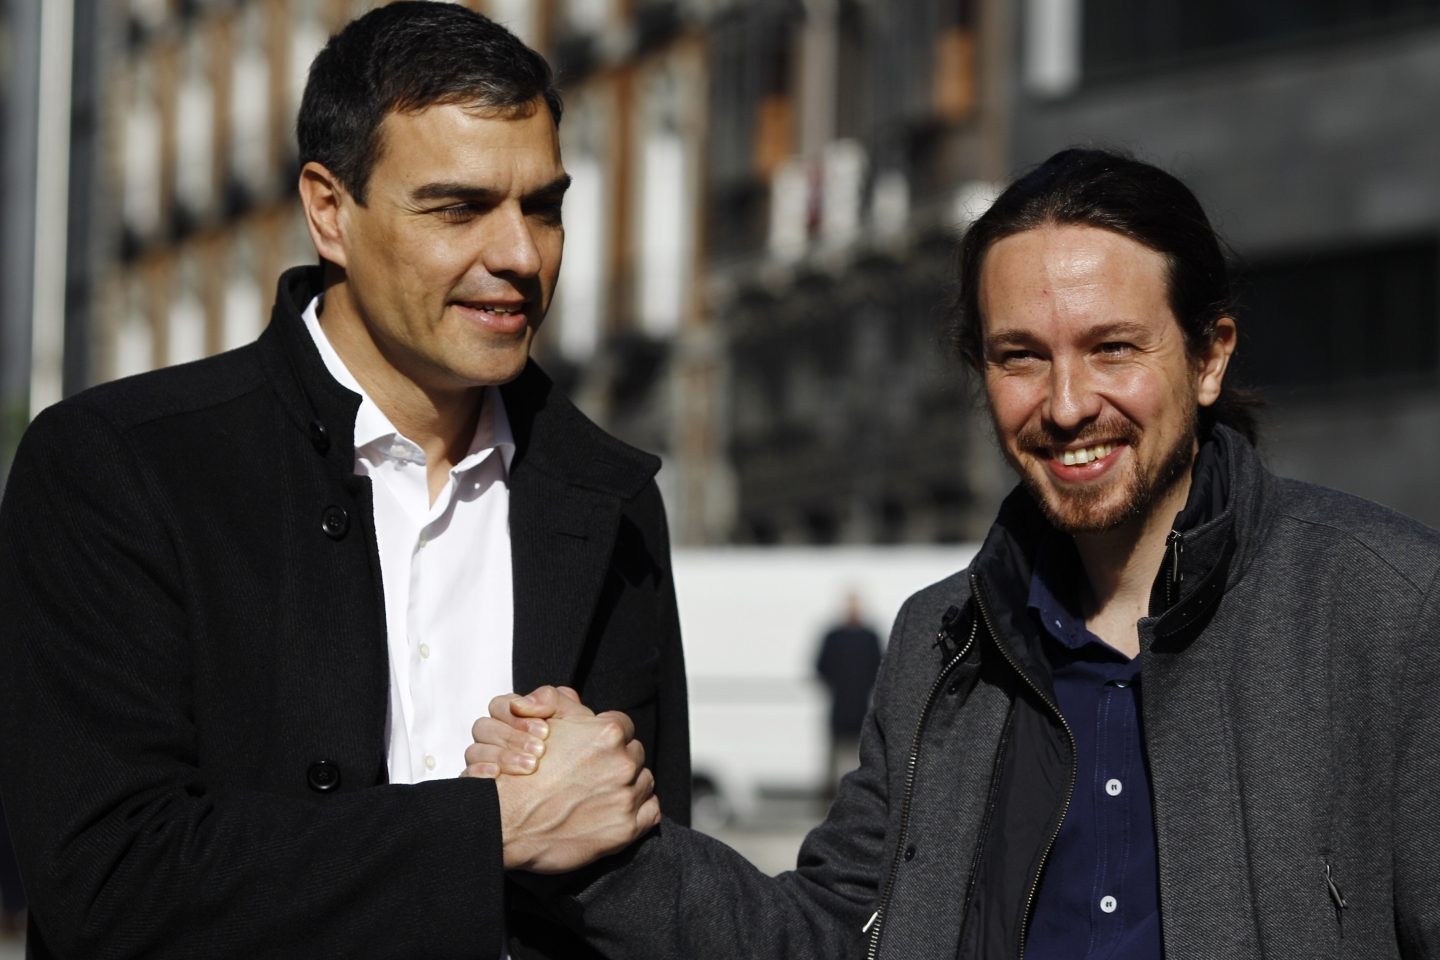 El PSOE empieza a colaborar con Podemos tras el portazo de C's a una ruta común